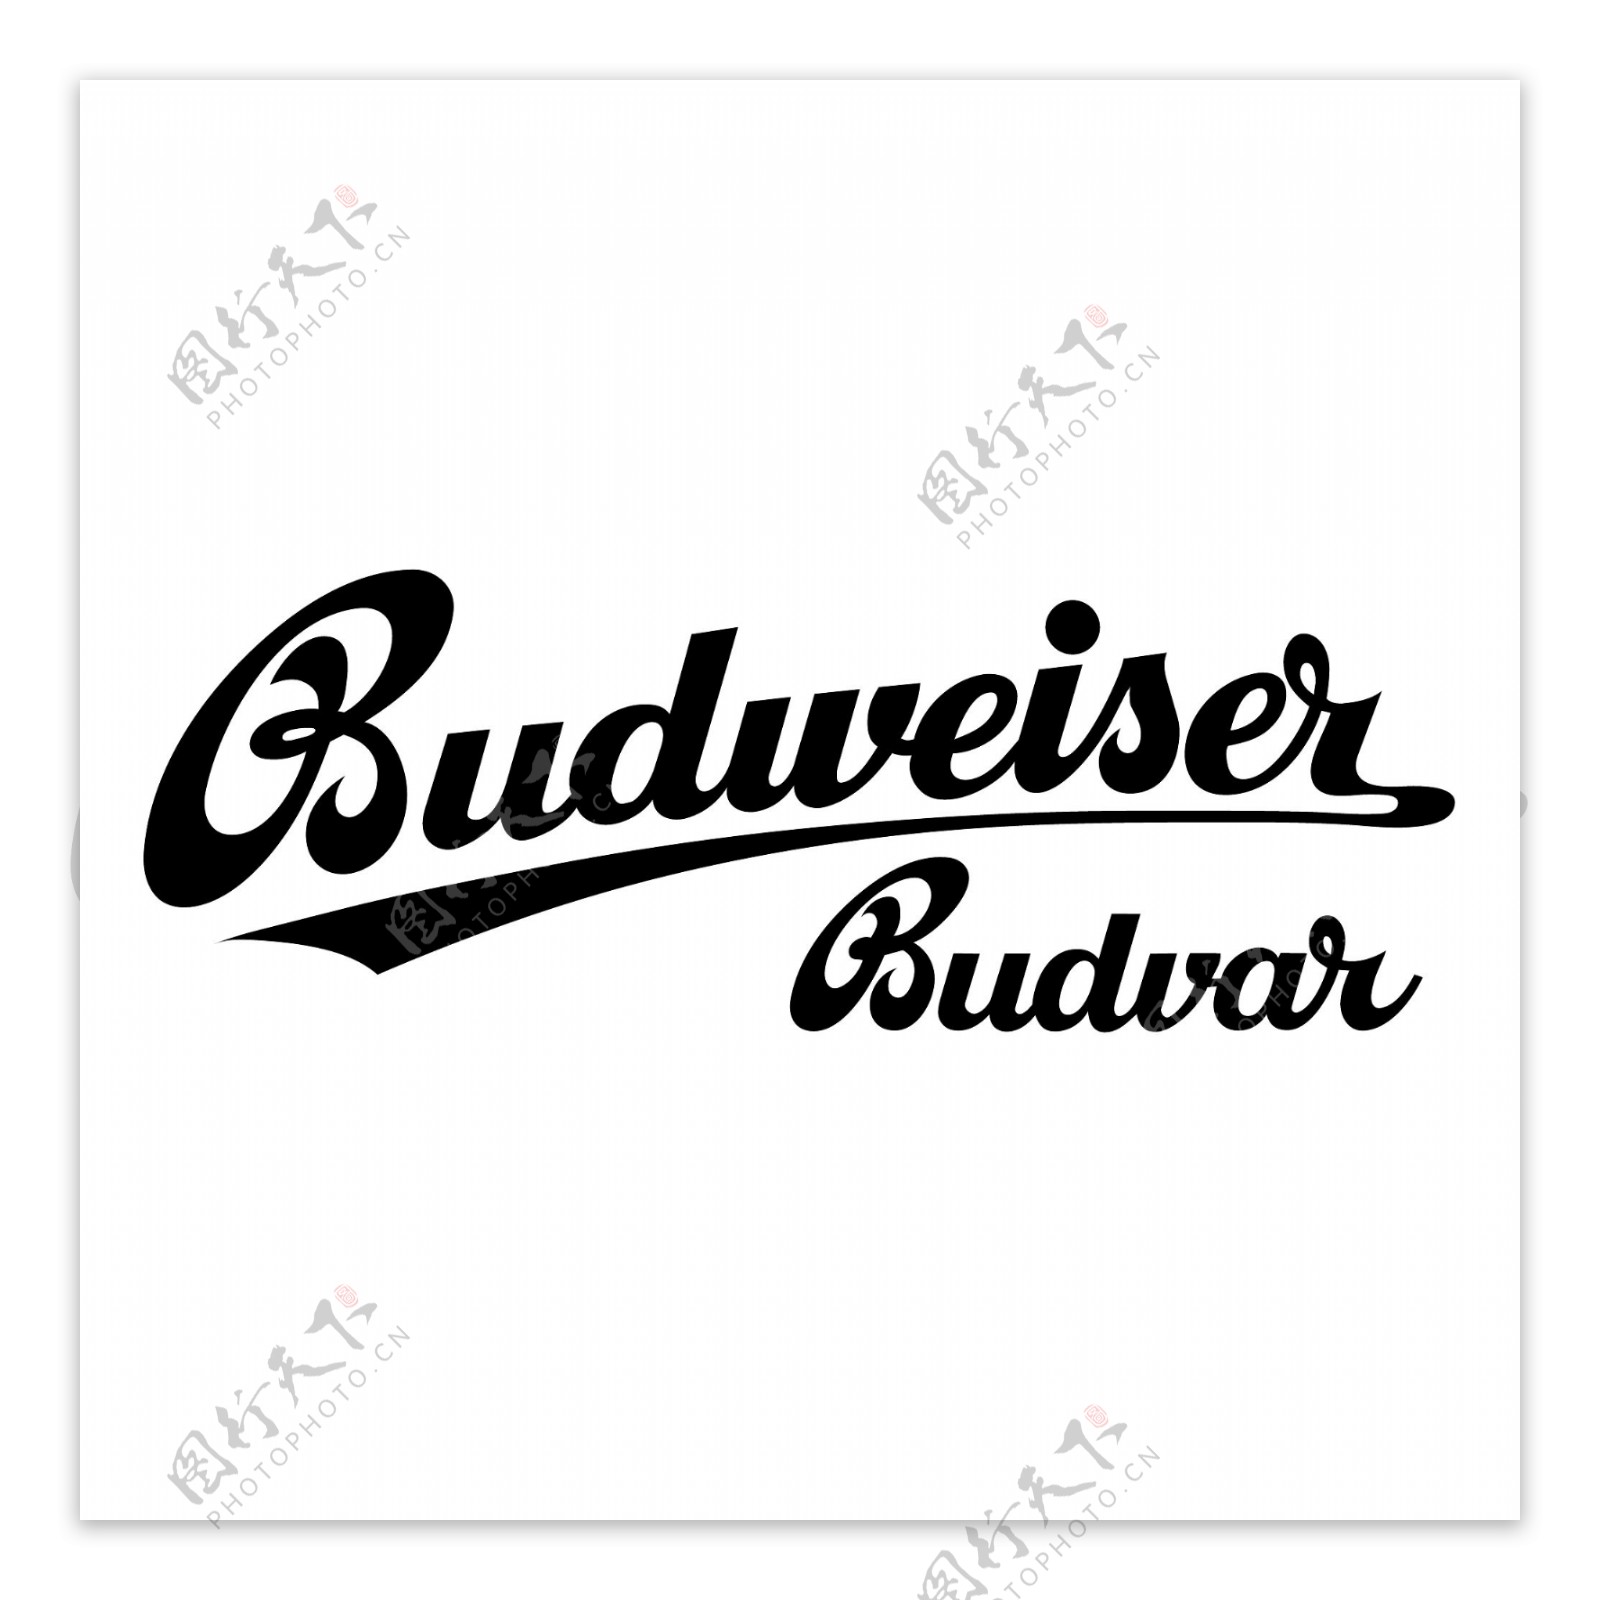 百威啤酒Budvar1